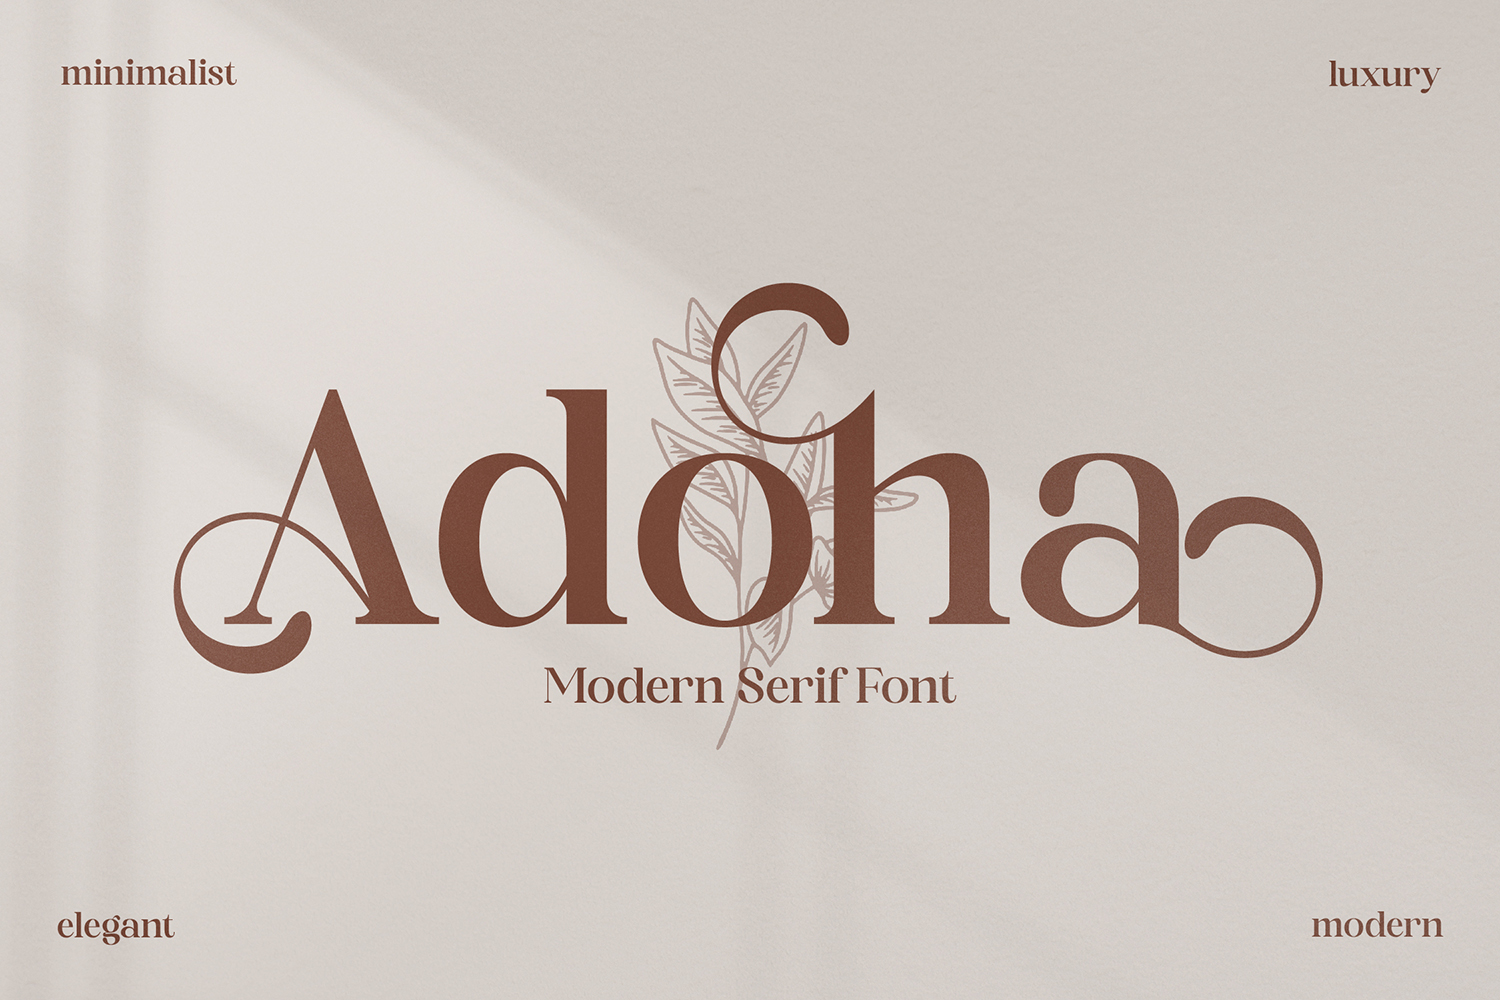 Adoha Free Font